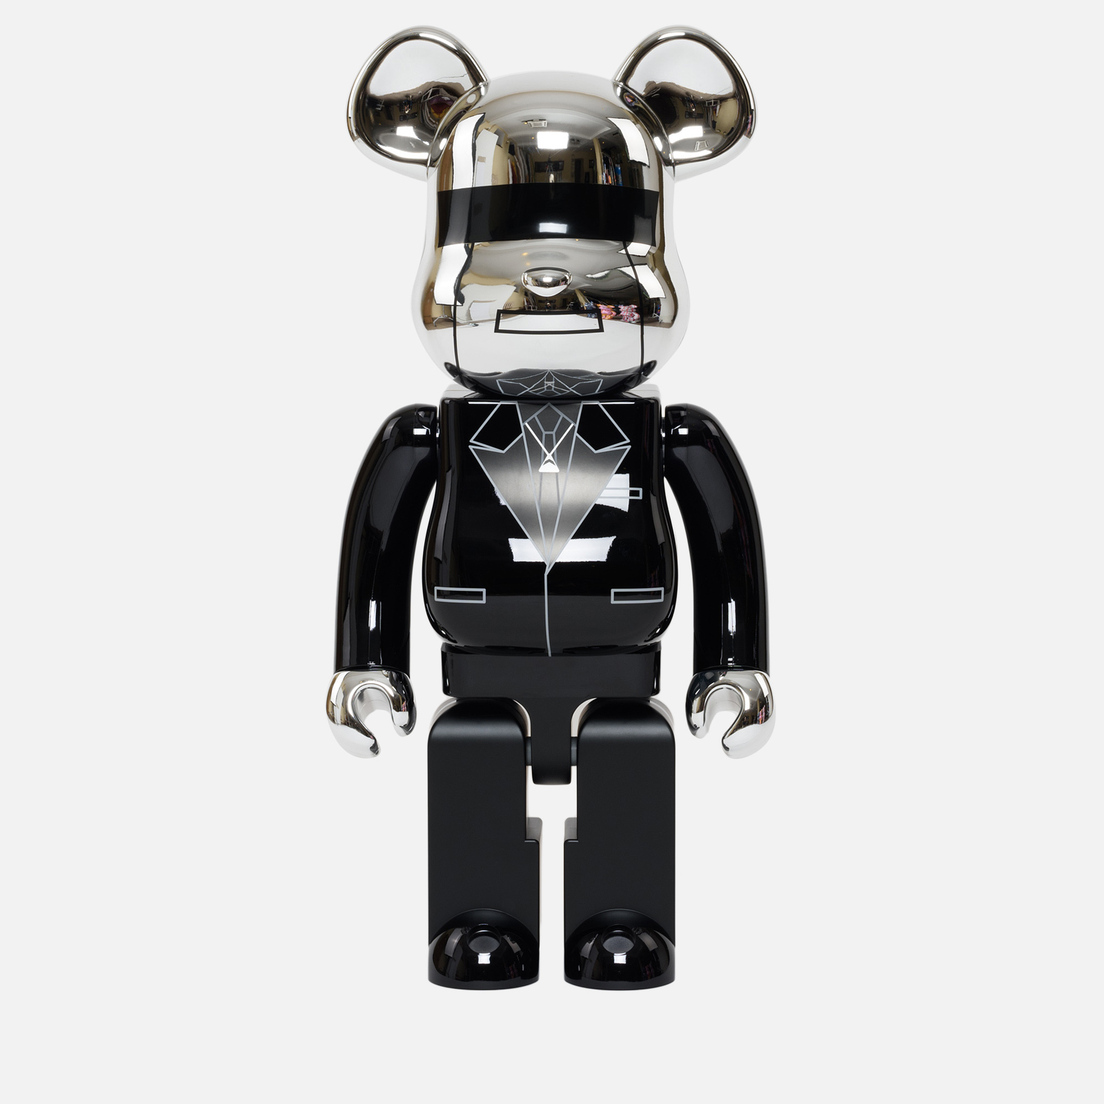 Medicom Toy Игрушка Daft Punk Thomas Bangalter 1000%